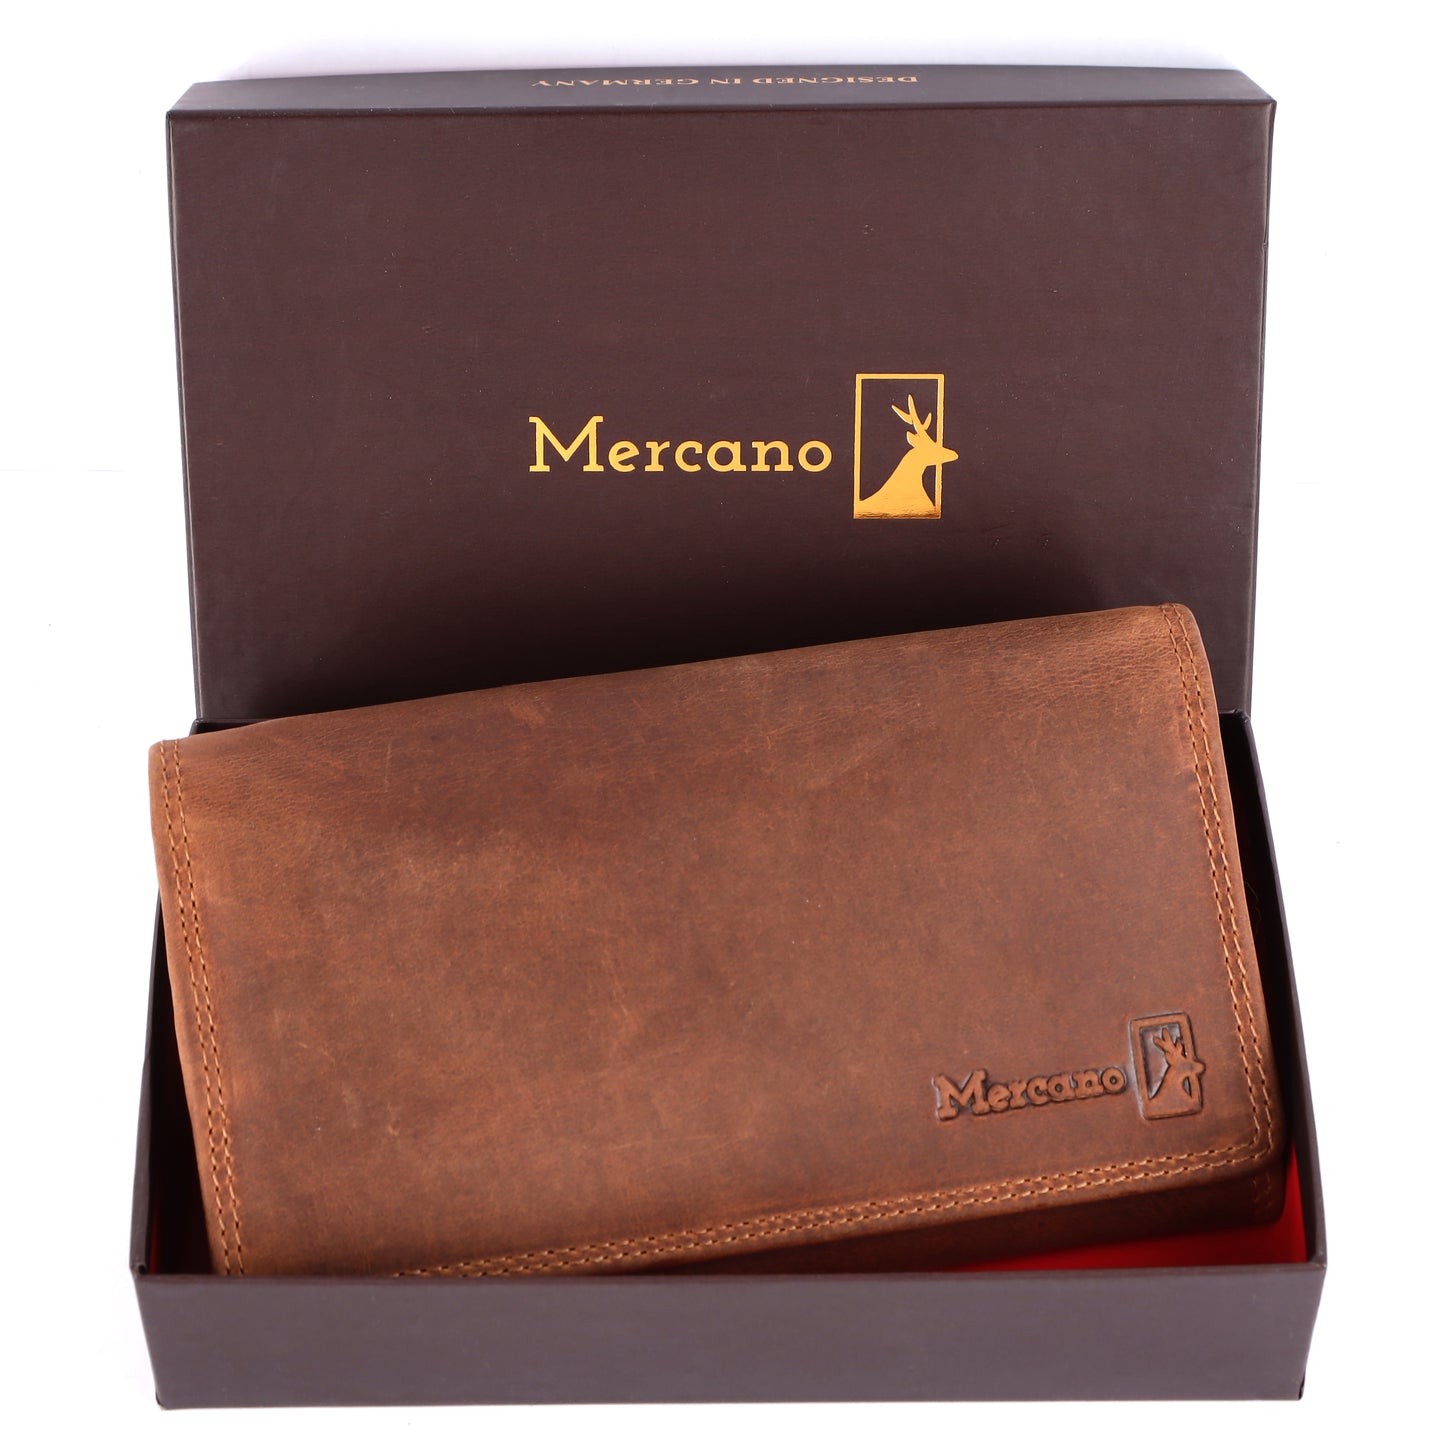 MERCANO® Braune Damen Geldbörse | Leder | RFID-Schutz | 11 Kartenfächern | 3 Scheinfächern | 2 Münzfächer | #VL04